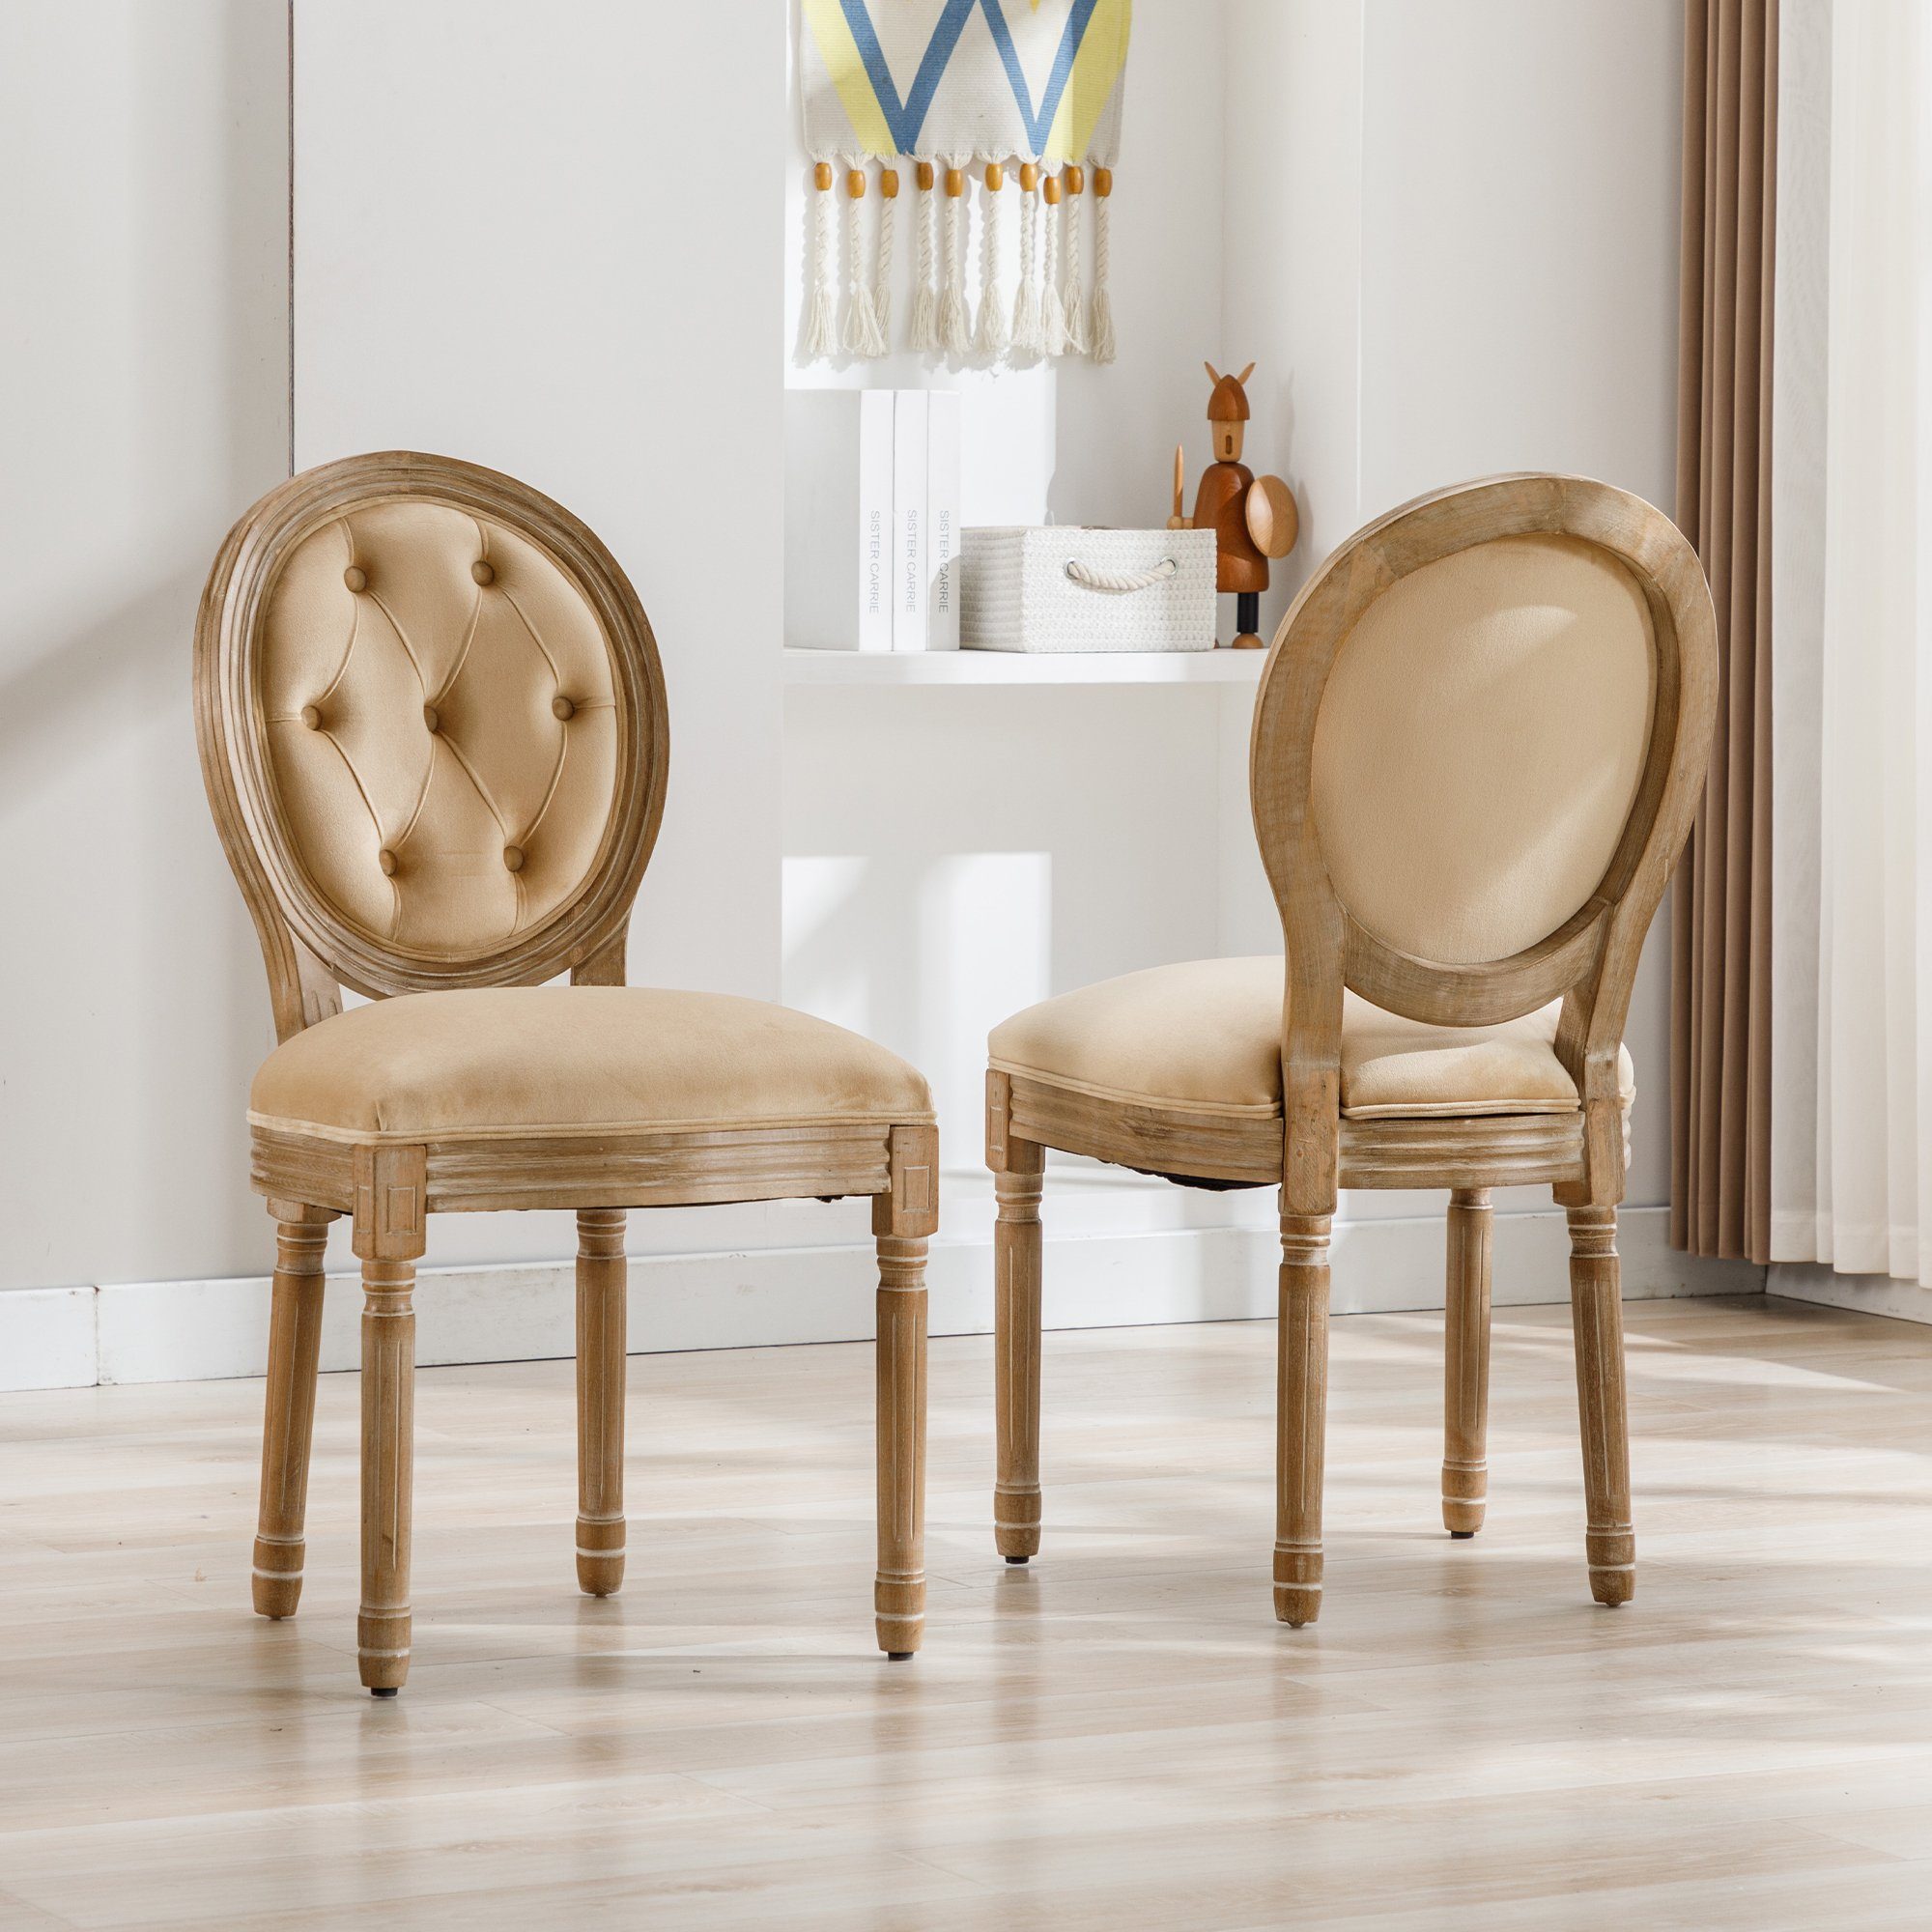 Celya Esszimmerstuhl 2er Set Küchenstühle mit getufteten Knöpfen, gepolsterte Sitzfläche aus Samt, beige